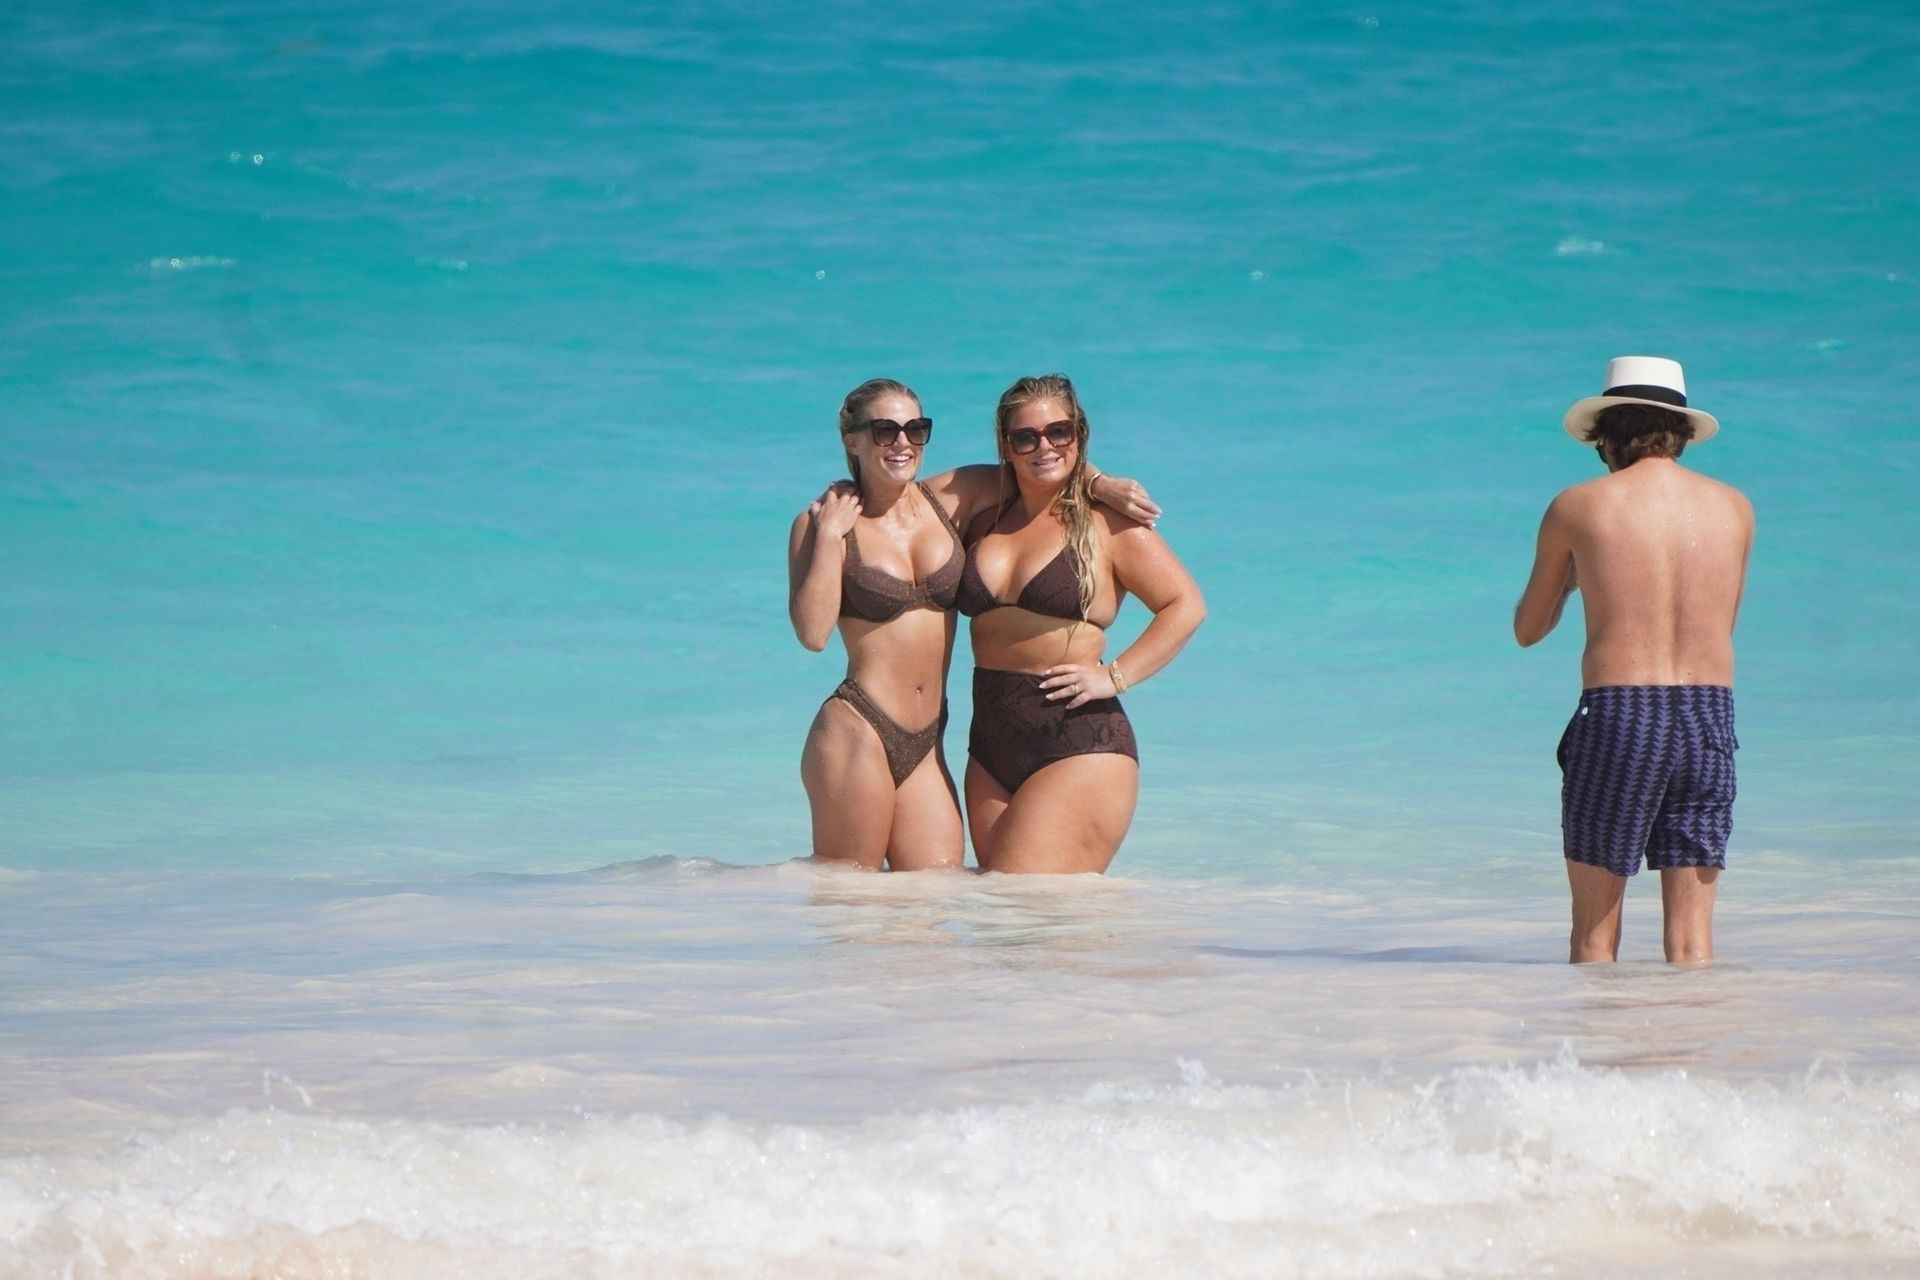 Madison lecroy naked - 🧡 Madison LeCroy - Bikini candids in Bahamas-02 Got...